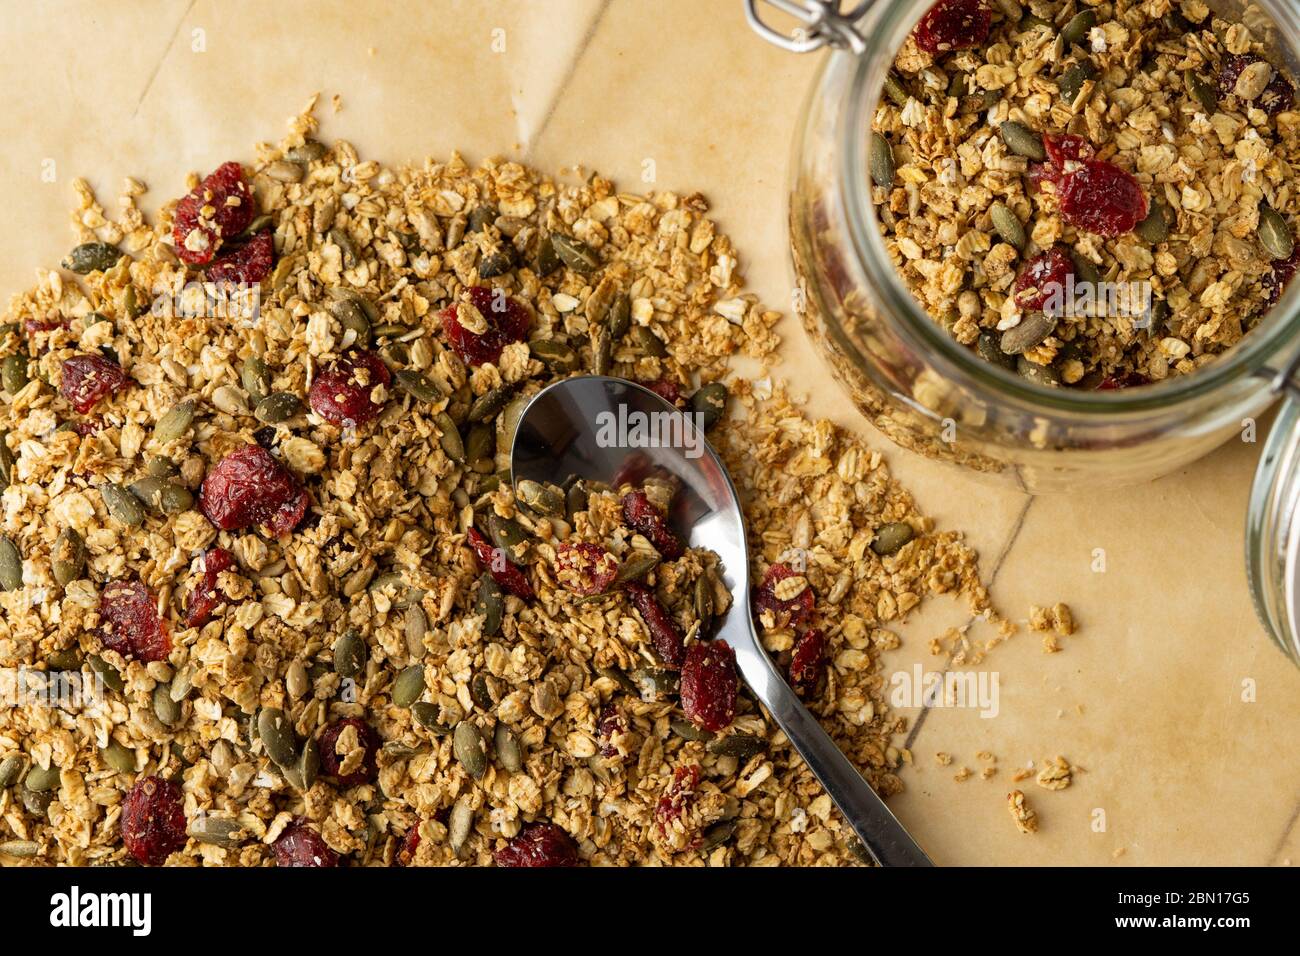 Hausgemachtes Müsli mit Samen und trockenen Cranberries auf einem Backpapier. Gesundes veganes Frühstück, Snack oder Mittagessen. Feiling Glas mit Metalllöffel. Draufsicht. Stockfoto